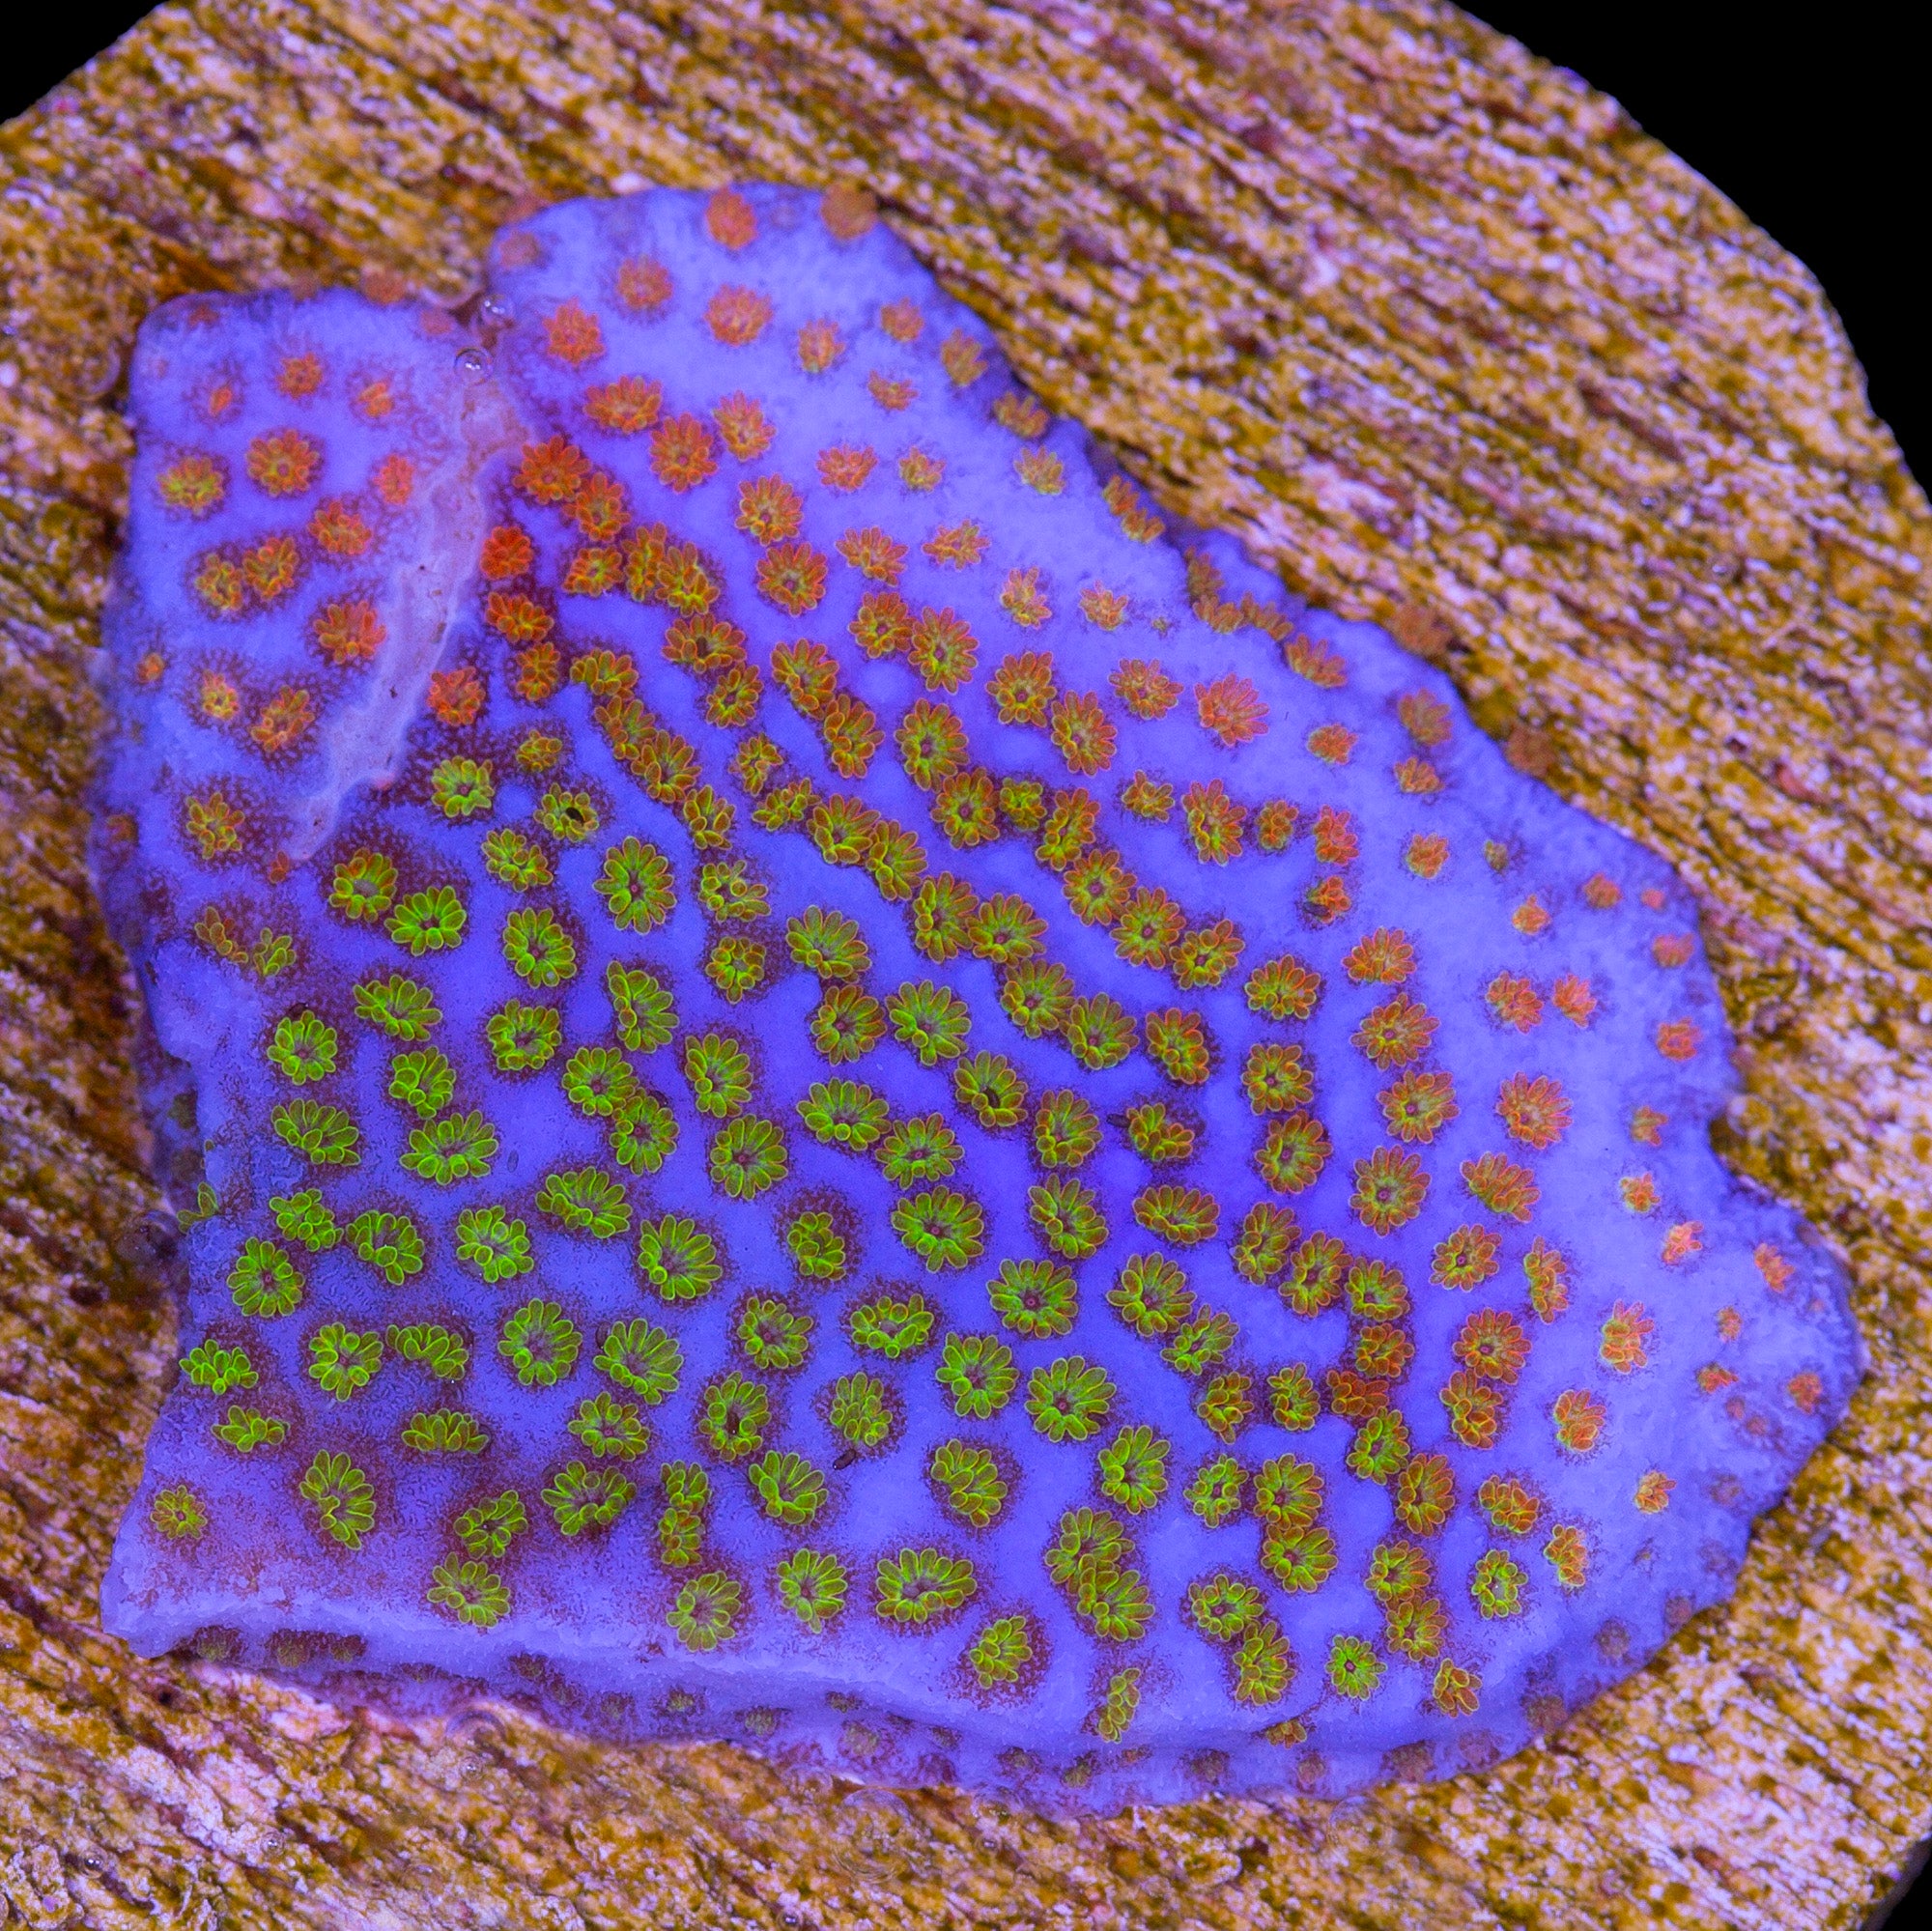 Rainbow Montipora Coral